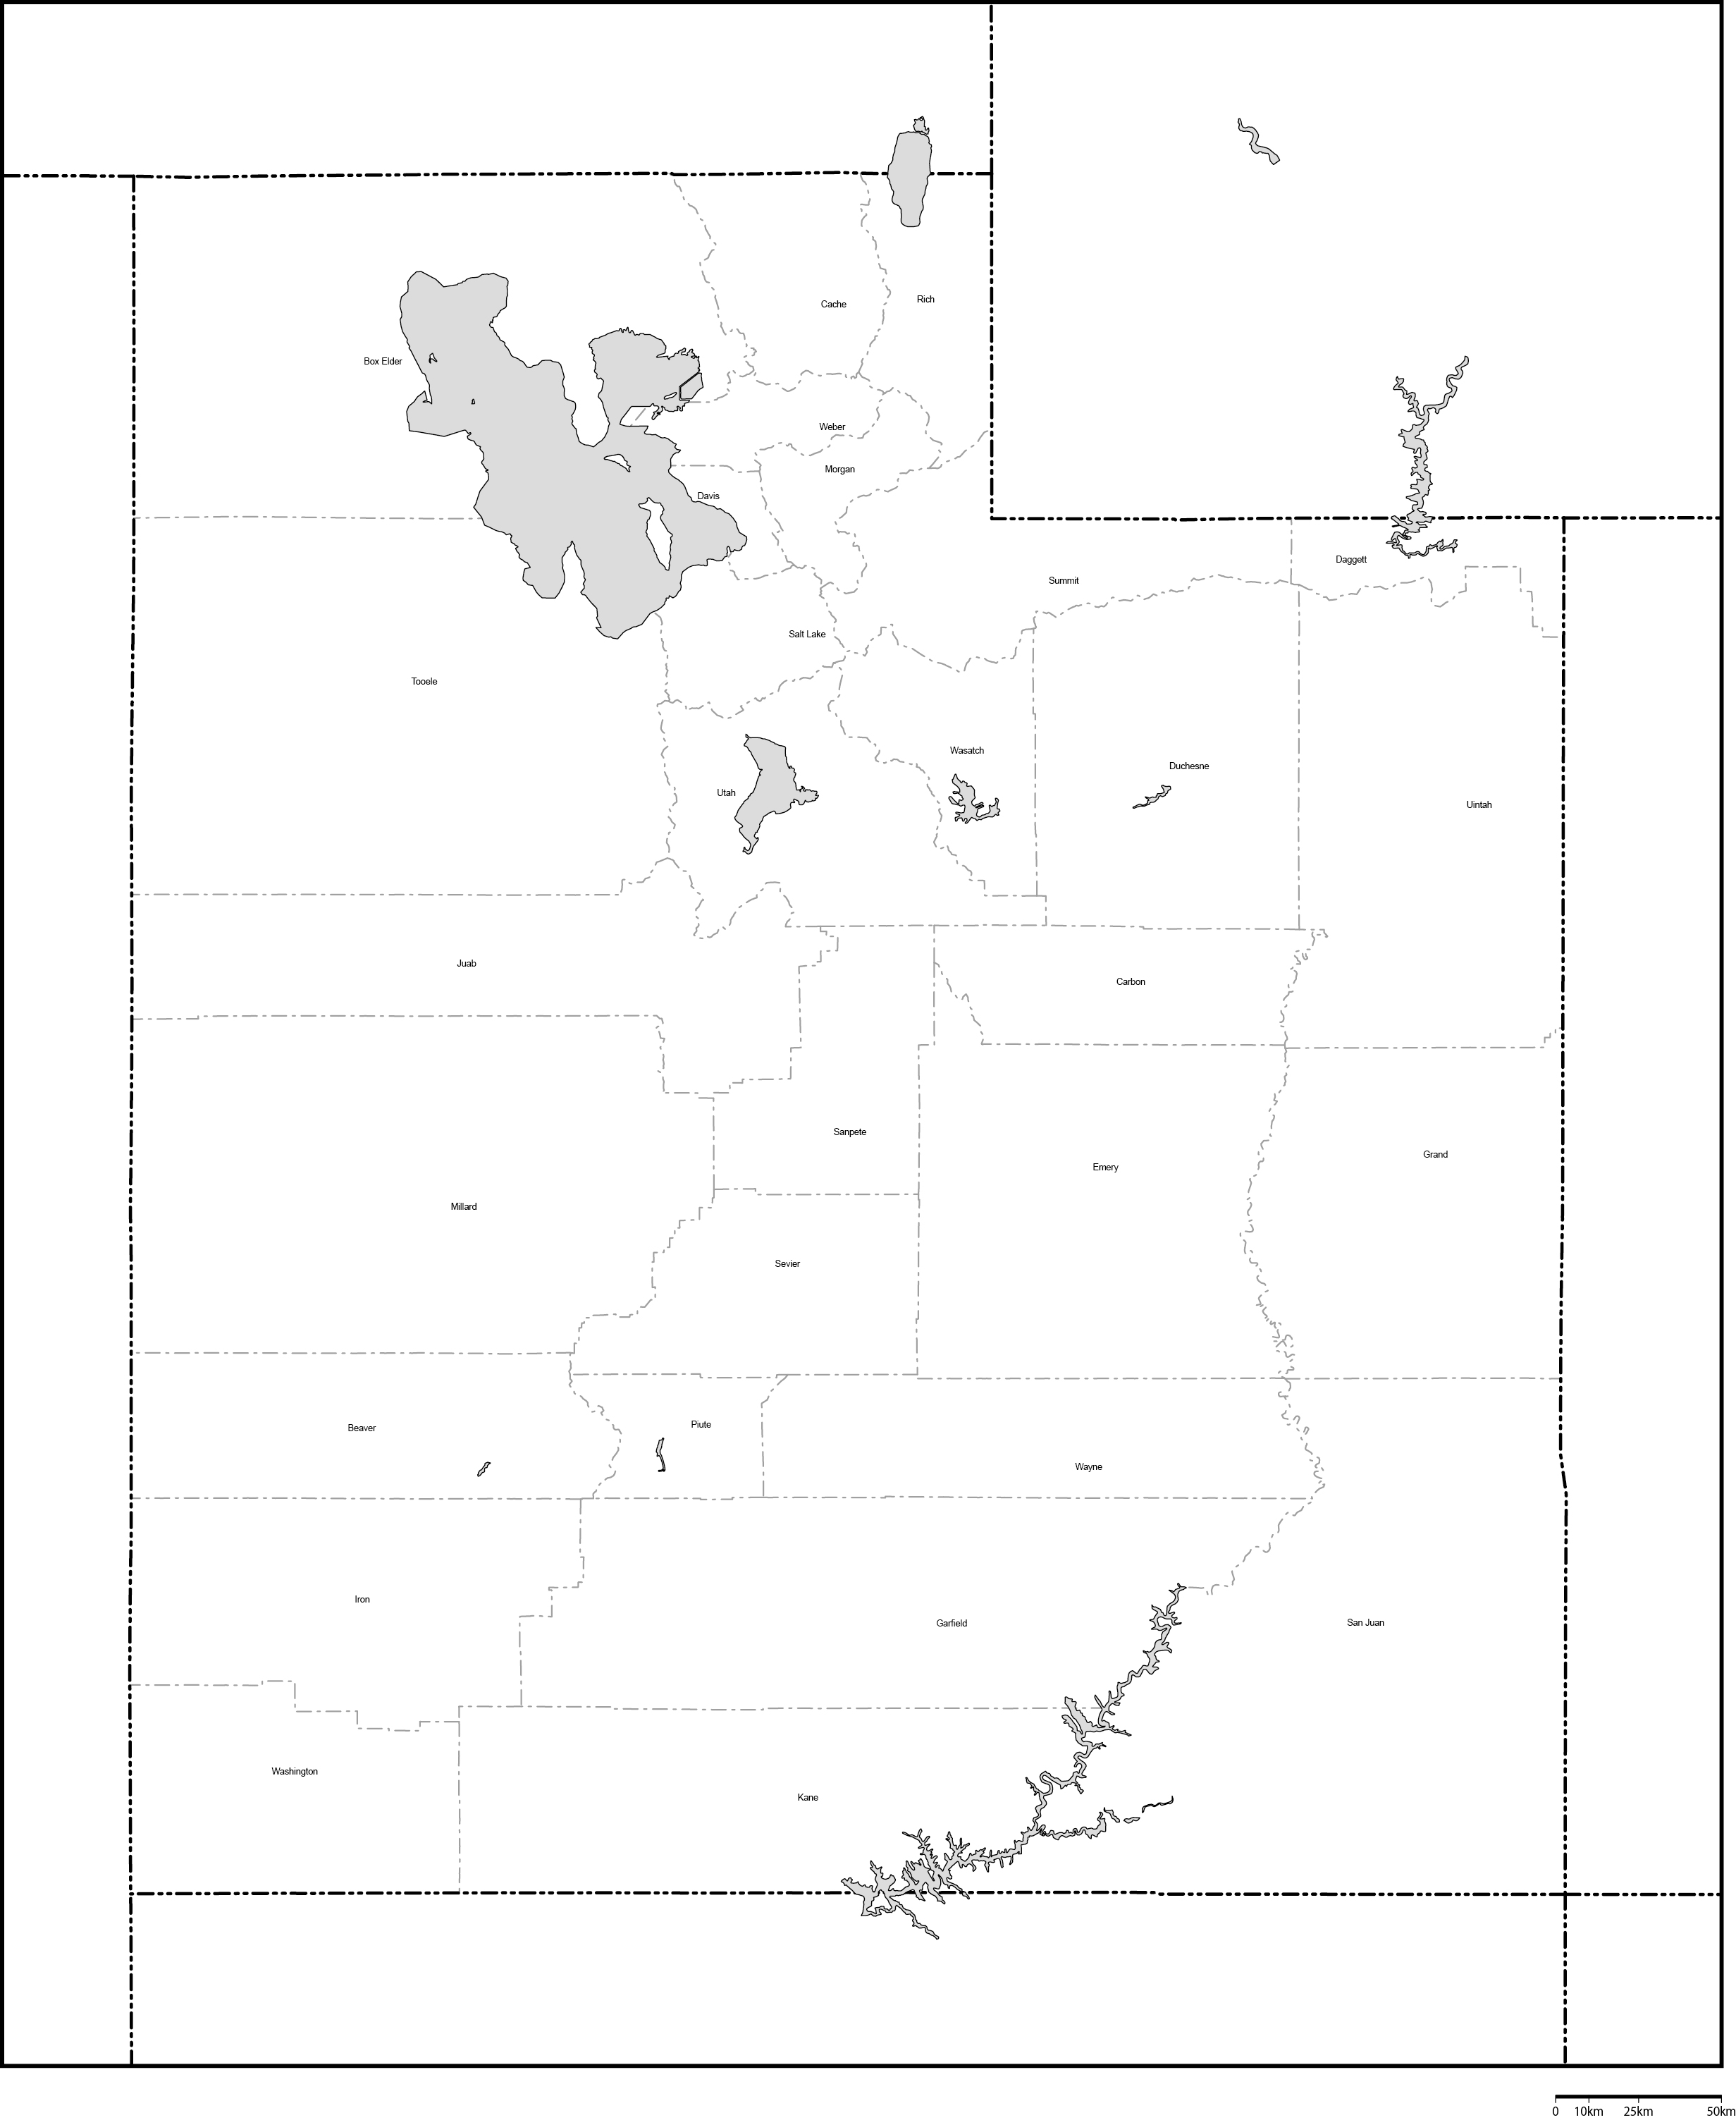 ユタ州郡分け白地図郡名あり(英語)フリーデータの画像